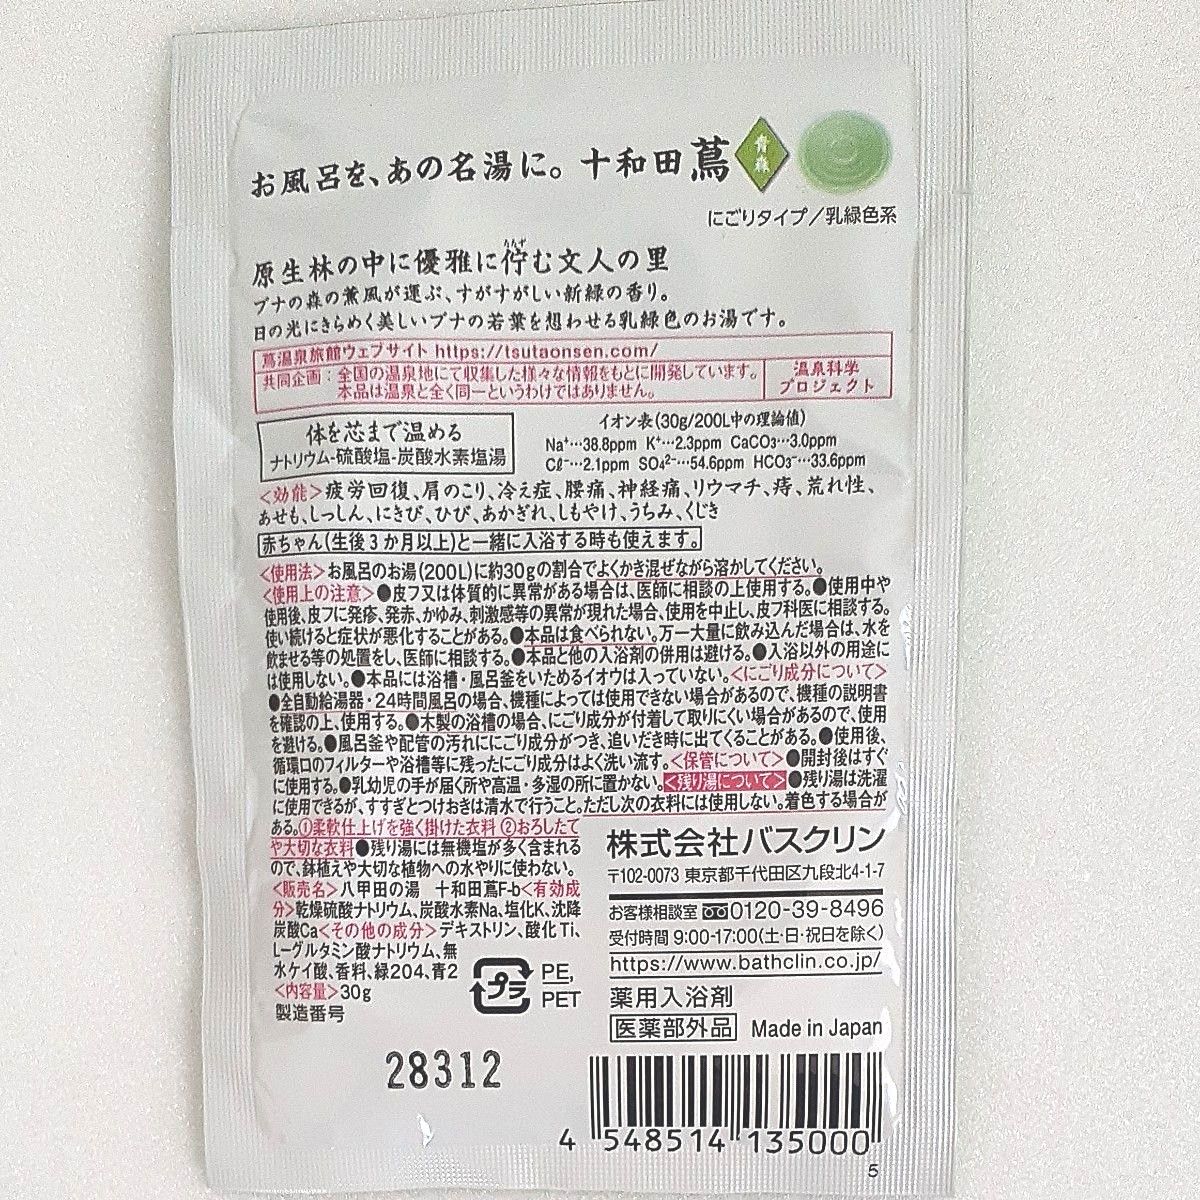 ナチュラルリネンフェイスタオル(日本製)1枚とFranc francガドミニョンシェルフィズ入浴剤1個と入浴剤4個セット